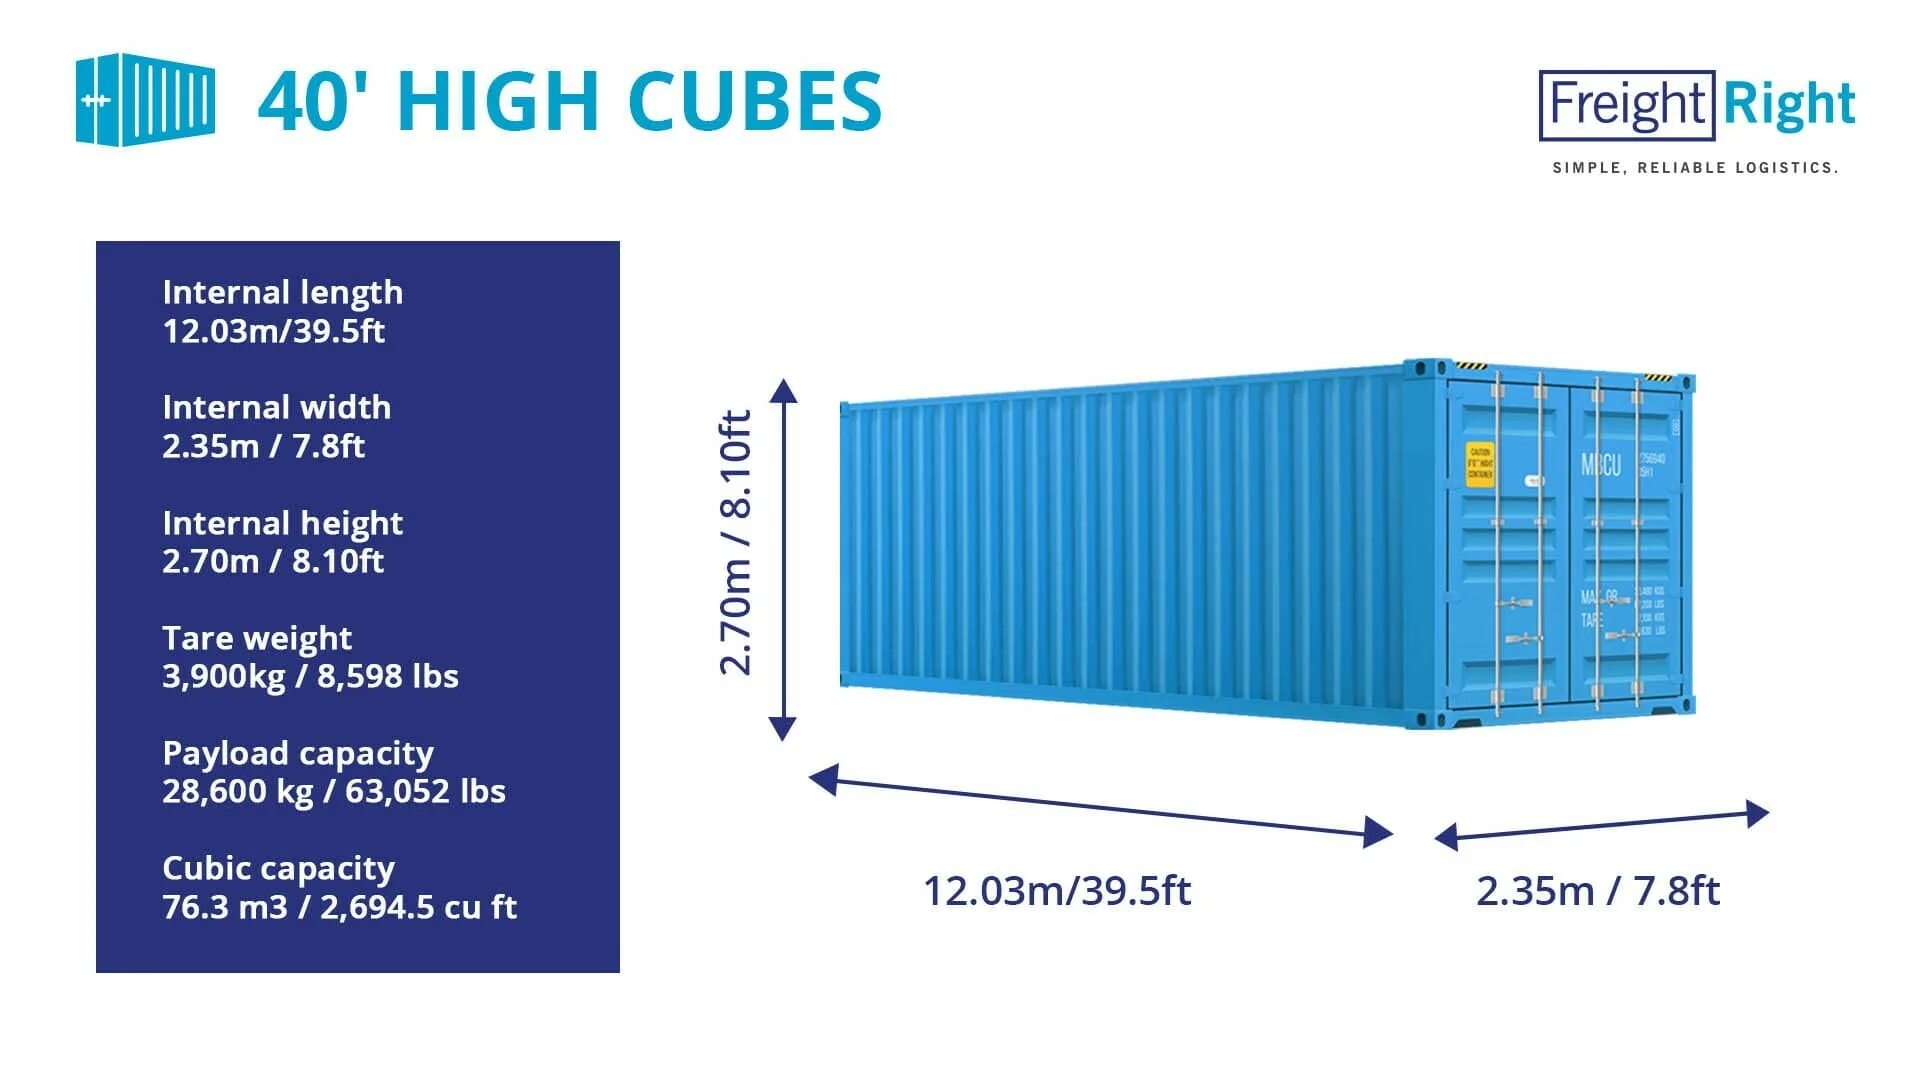 Размер морского контейнера 40 футов цена. Контейнер 40 HC/hq (High Cube). Контейнер 40 фут Хай Кьюб размер. Габариты 40 фут контейнера High Cube. Размеры морского контейнера 40 футов High Cube.